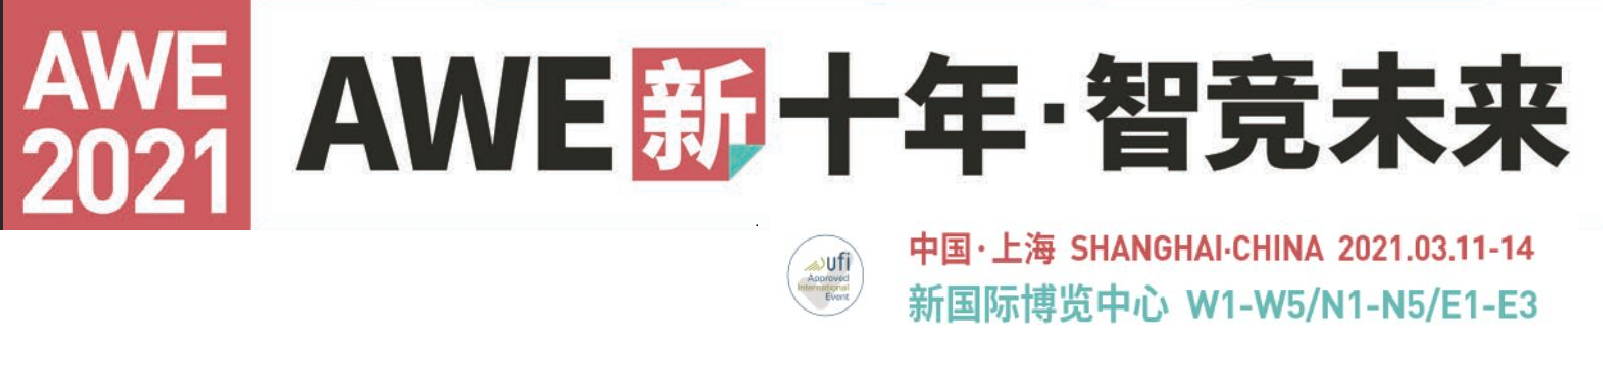 AWE2021年 上海家电及消费电子博览会 邀请函_00.png